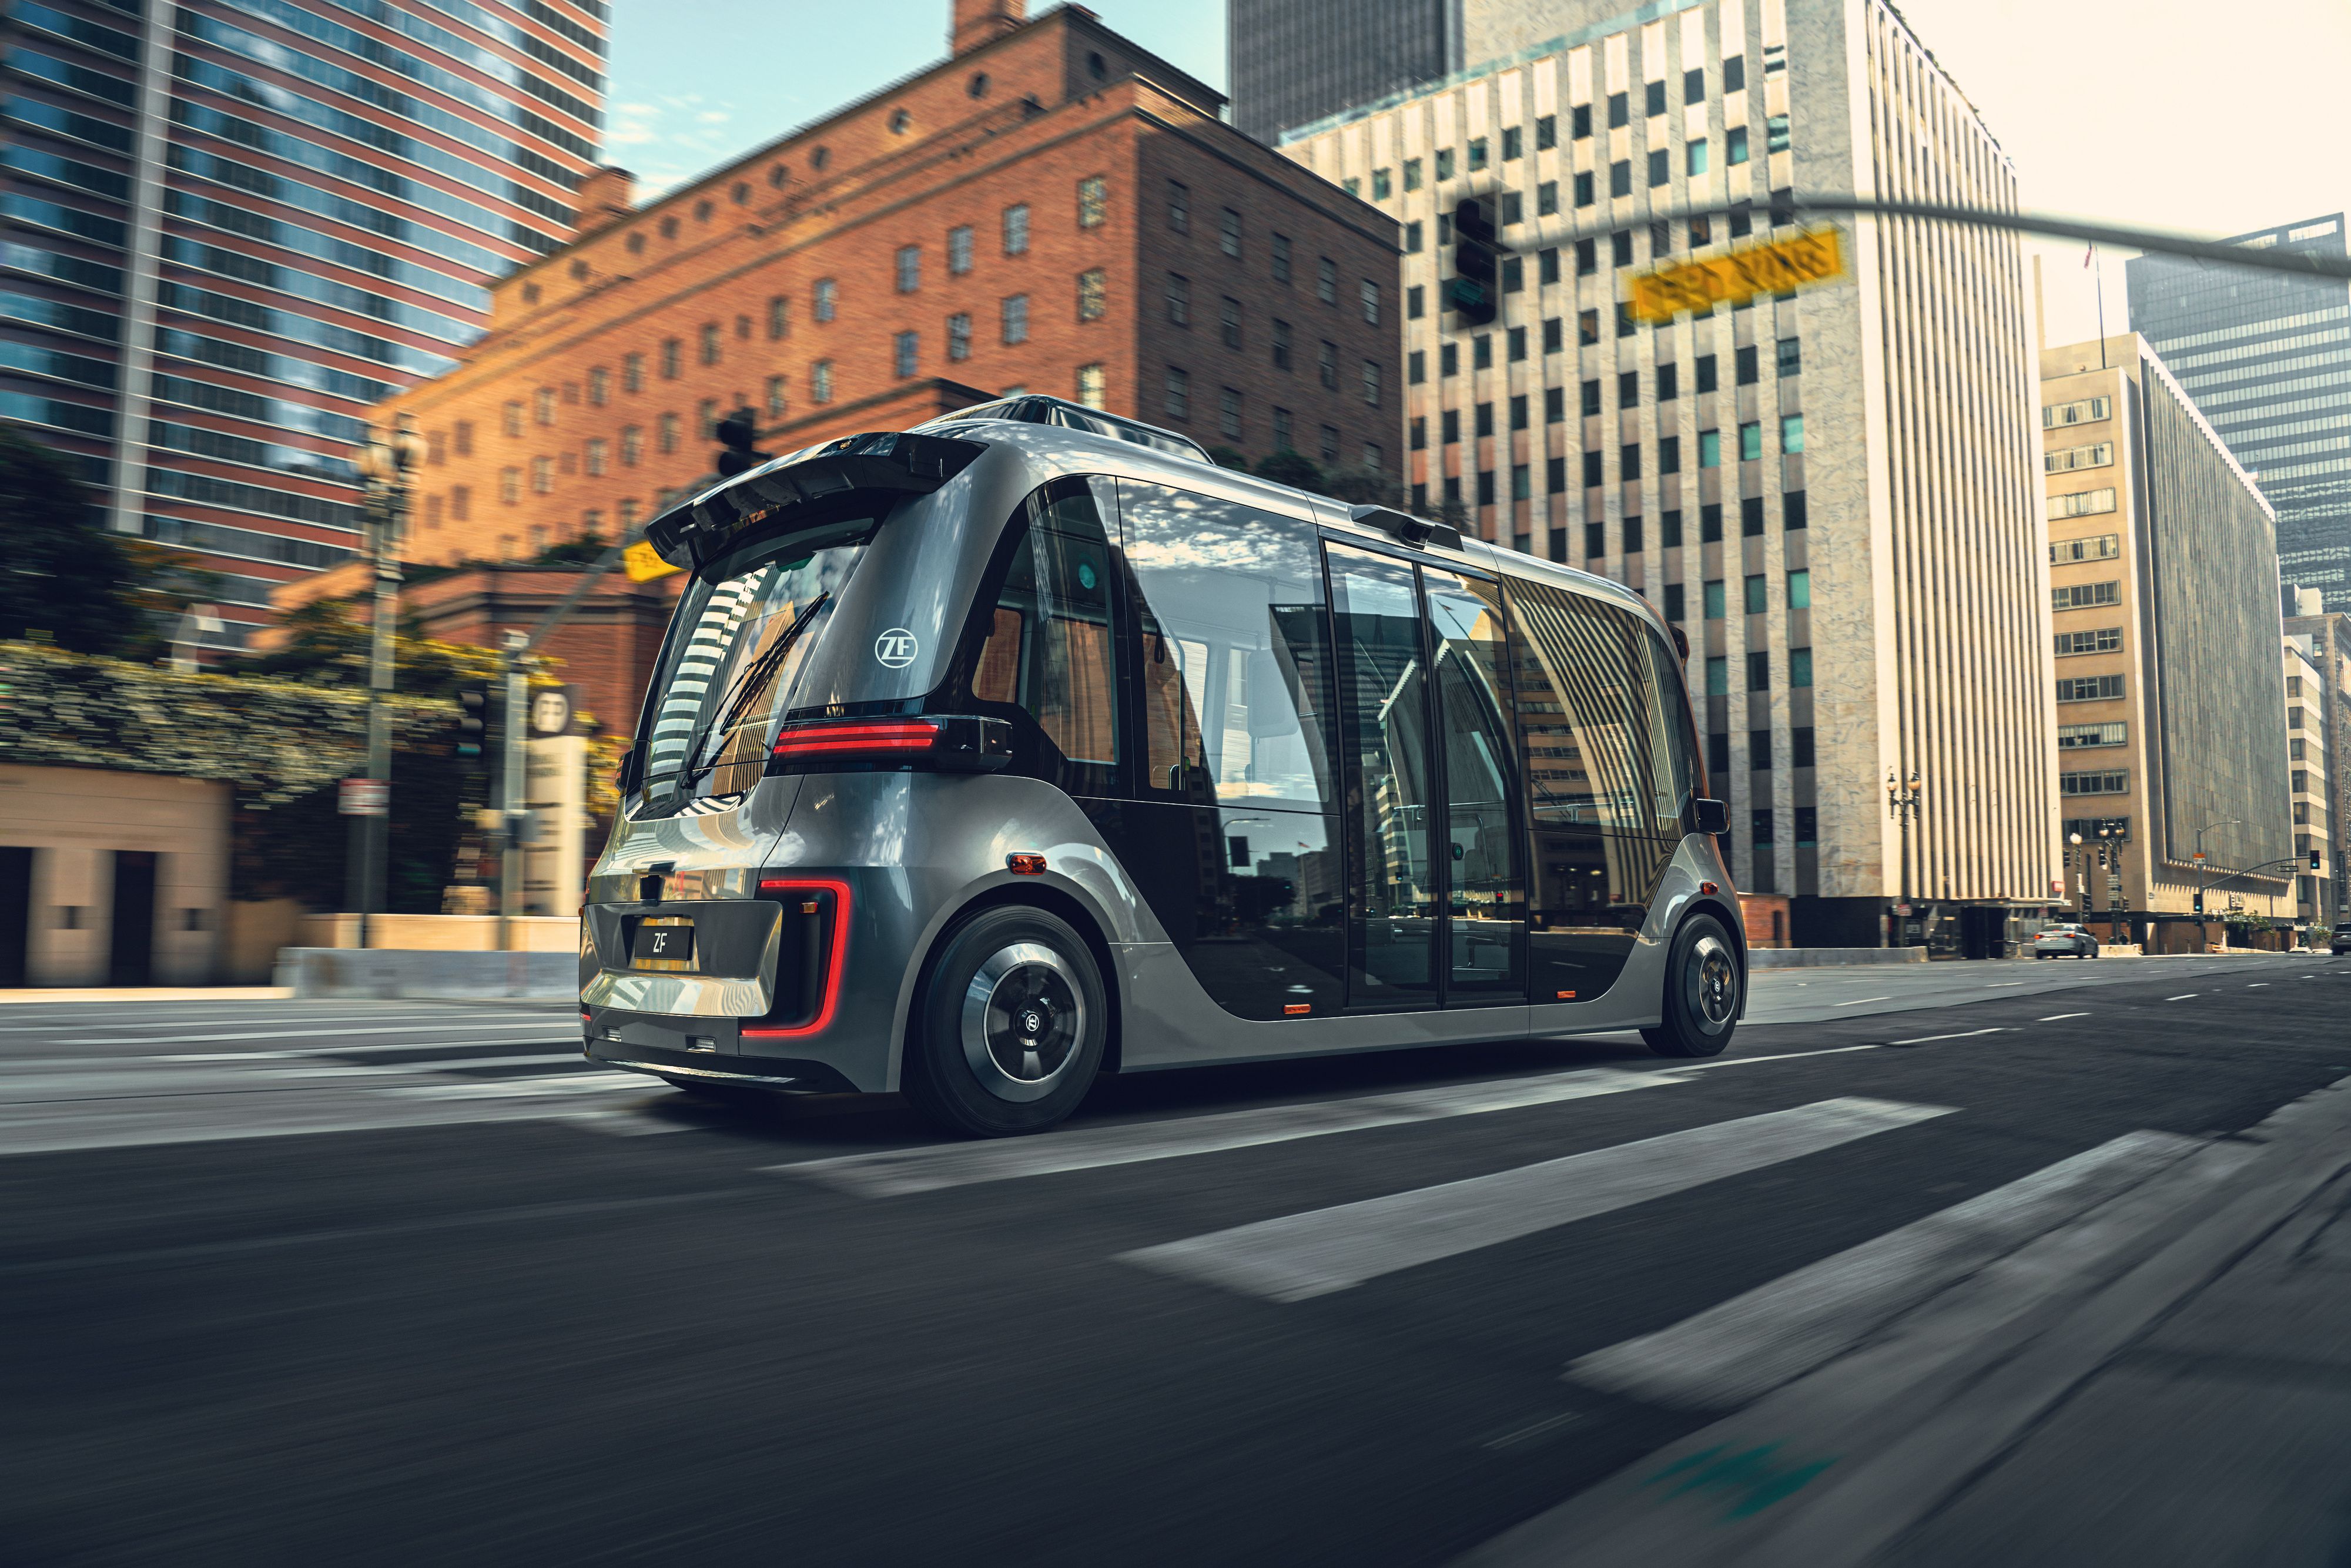 Autonomous vehicles urban mobility decarbonisation (image: ZF)